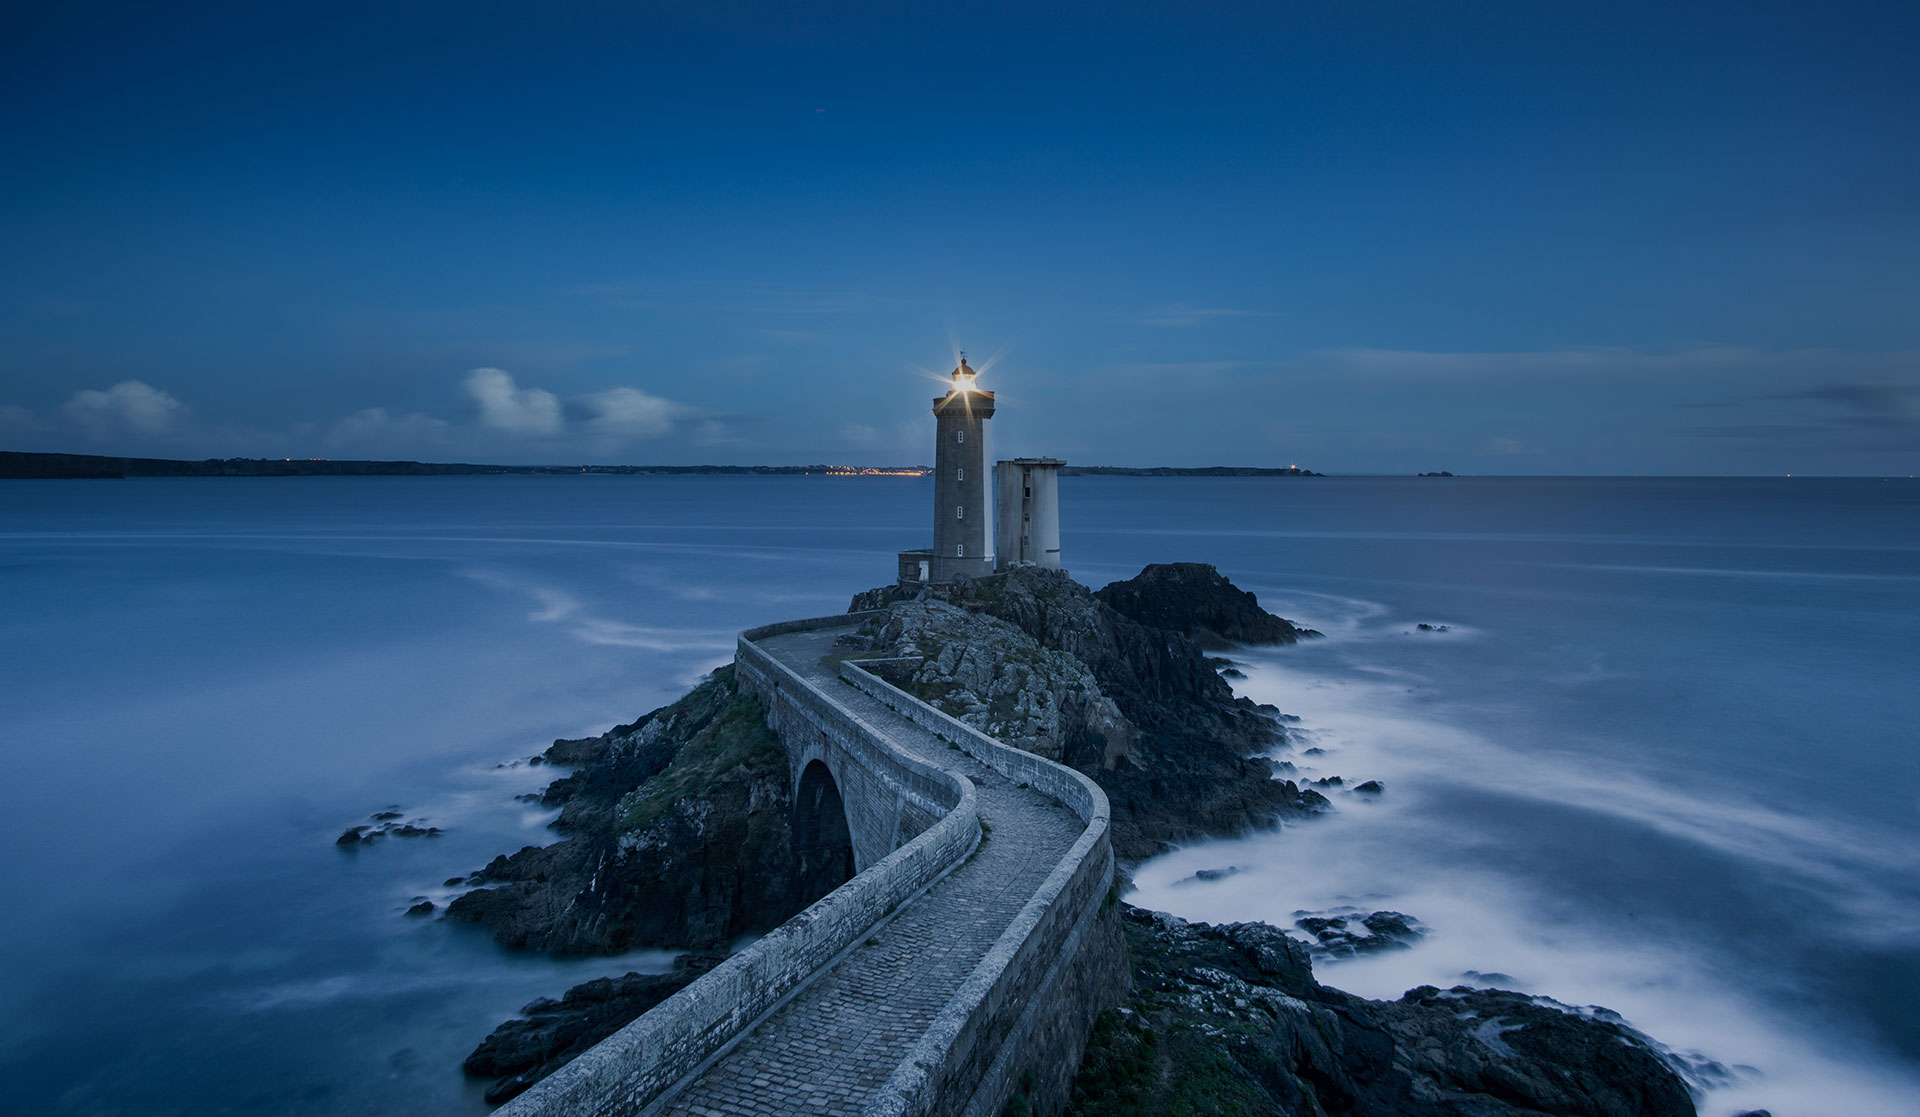 The Petit Minou Lighthouse